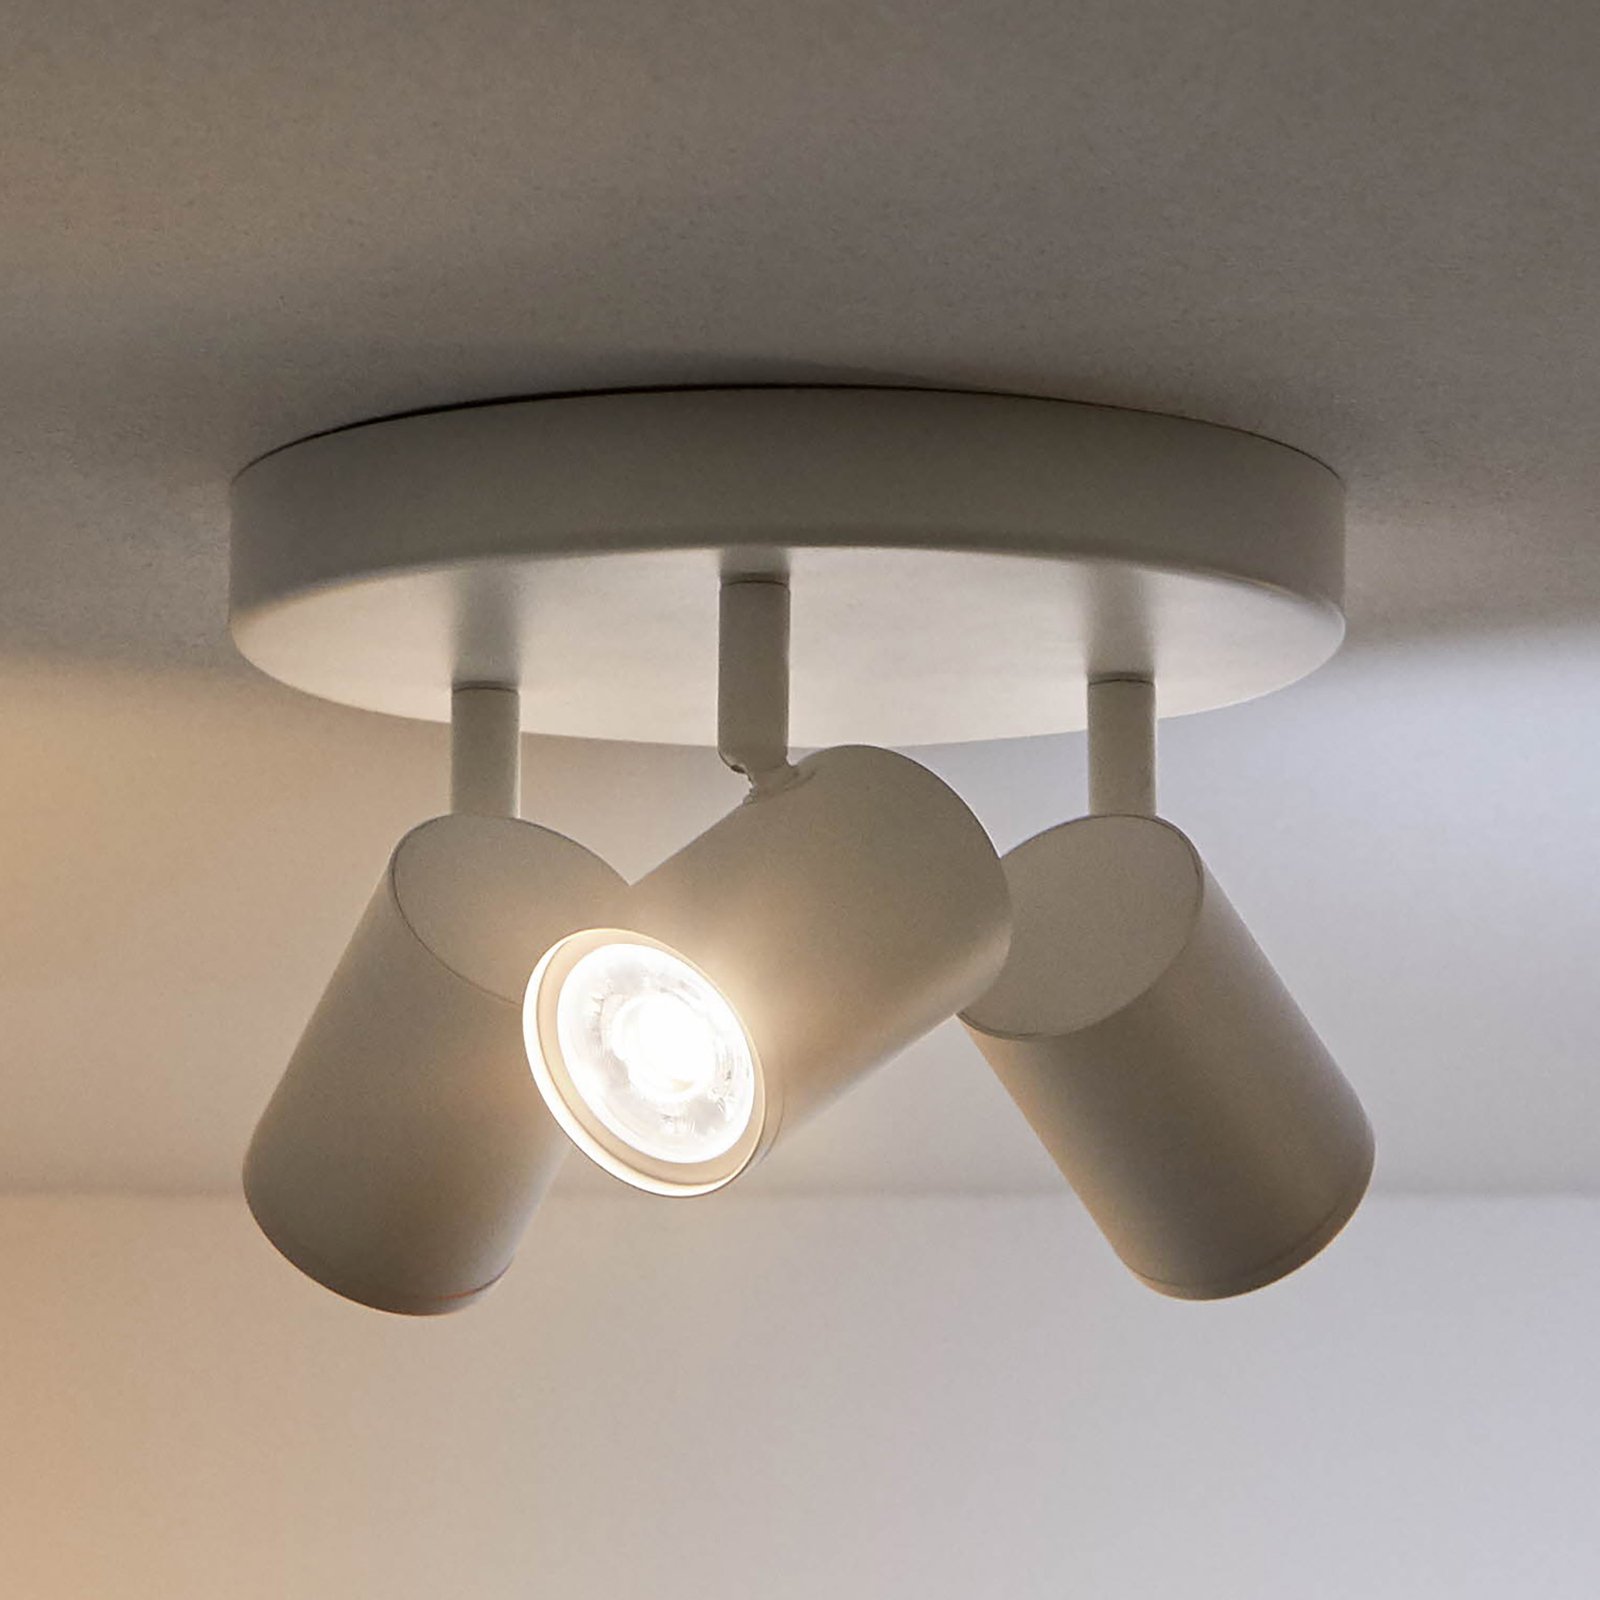 WiZ spot LED soffitto Imageo, 3 luci tondo, bianco